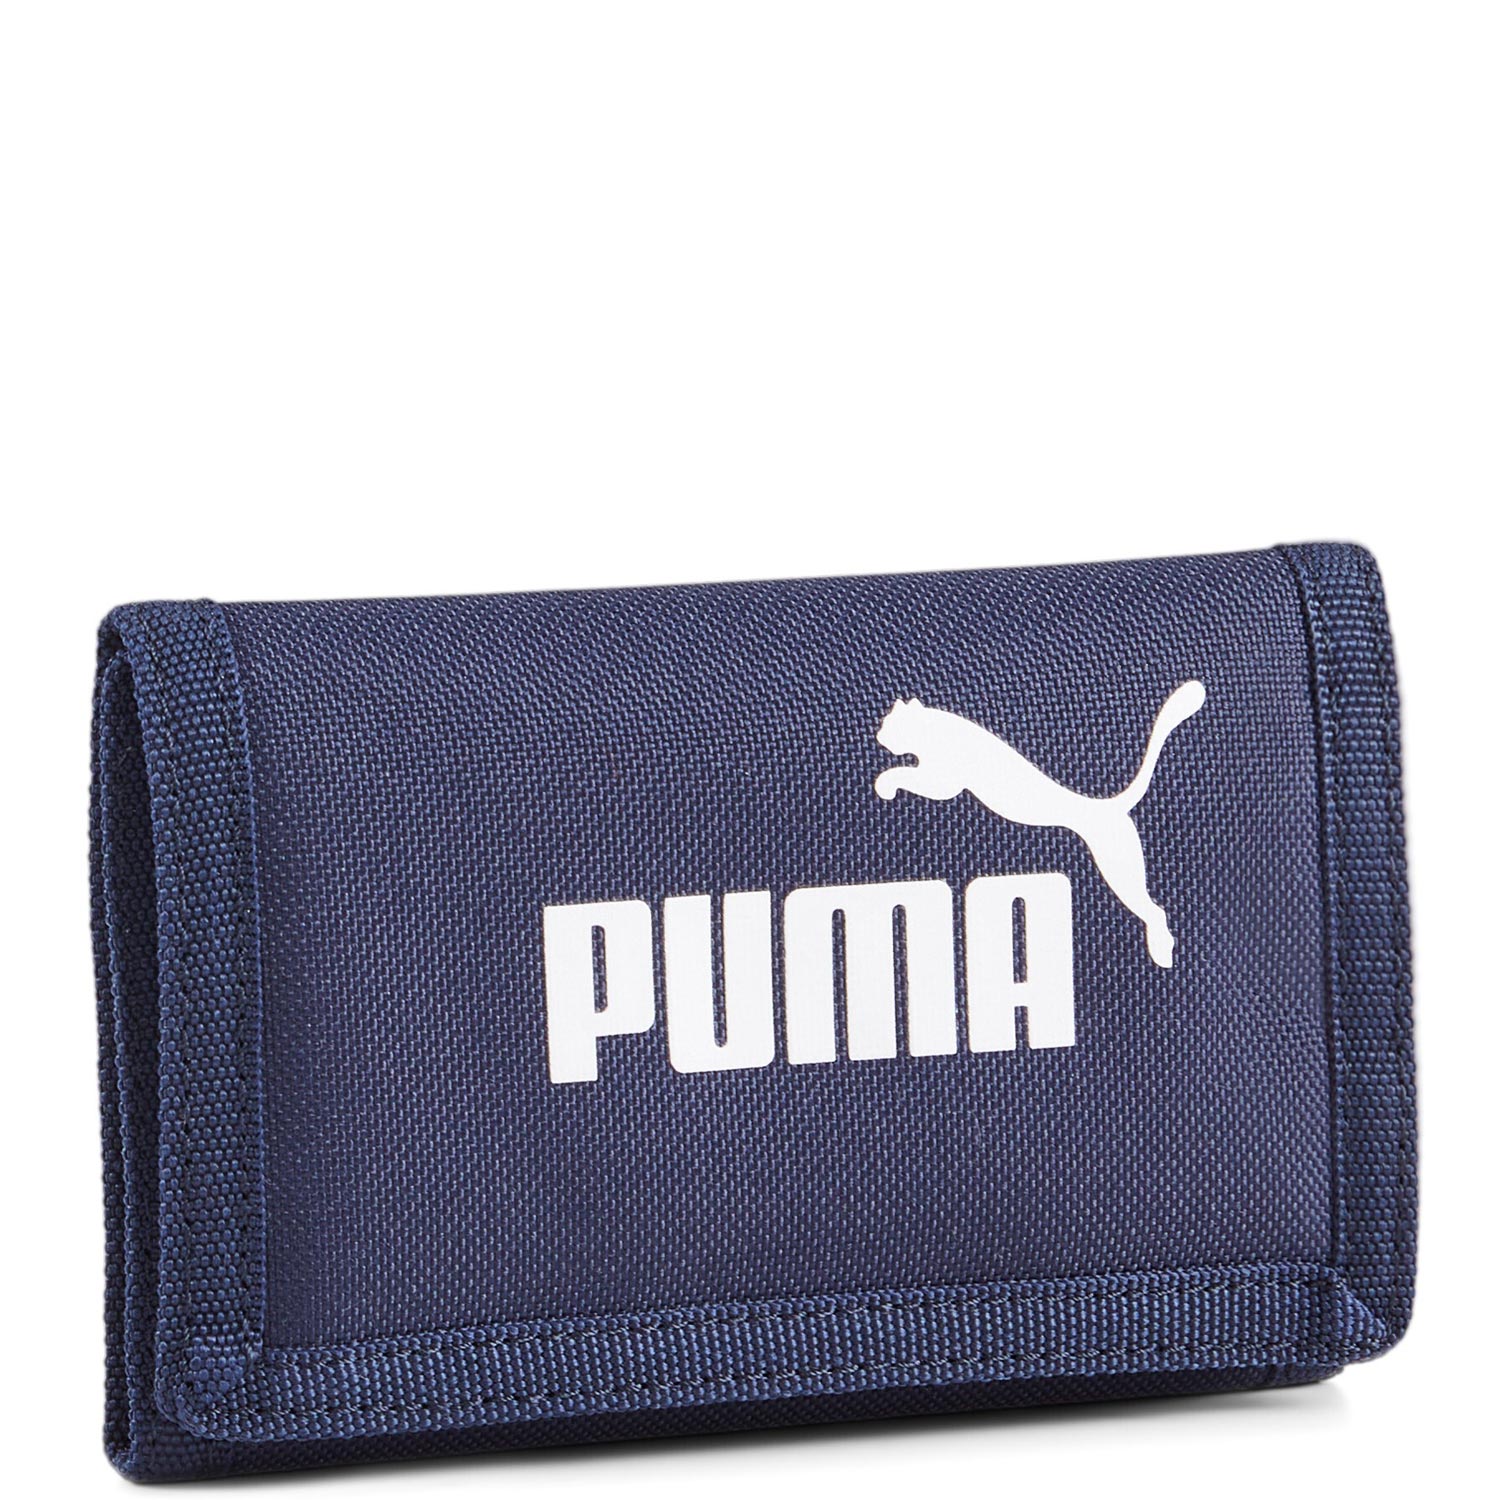 Puma Geldbörse Klett Phase blau